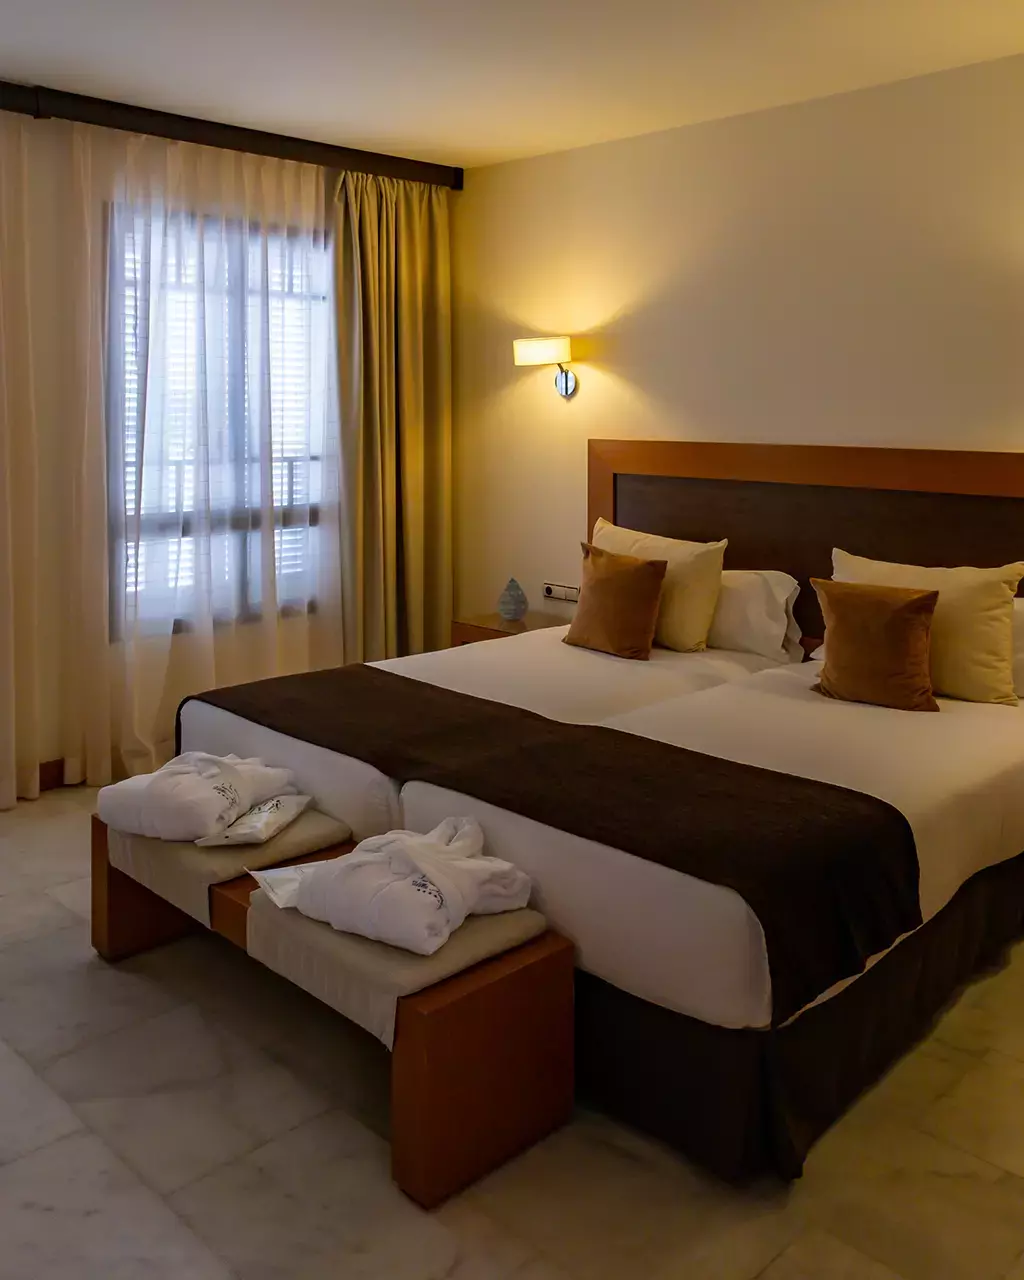 Hôtel Suite Villa Maria à Tenerife, notre avis et expérience - Emeraude Trip